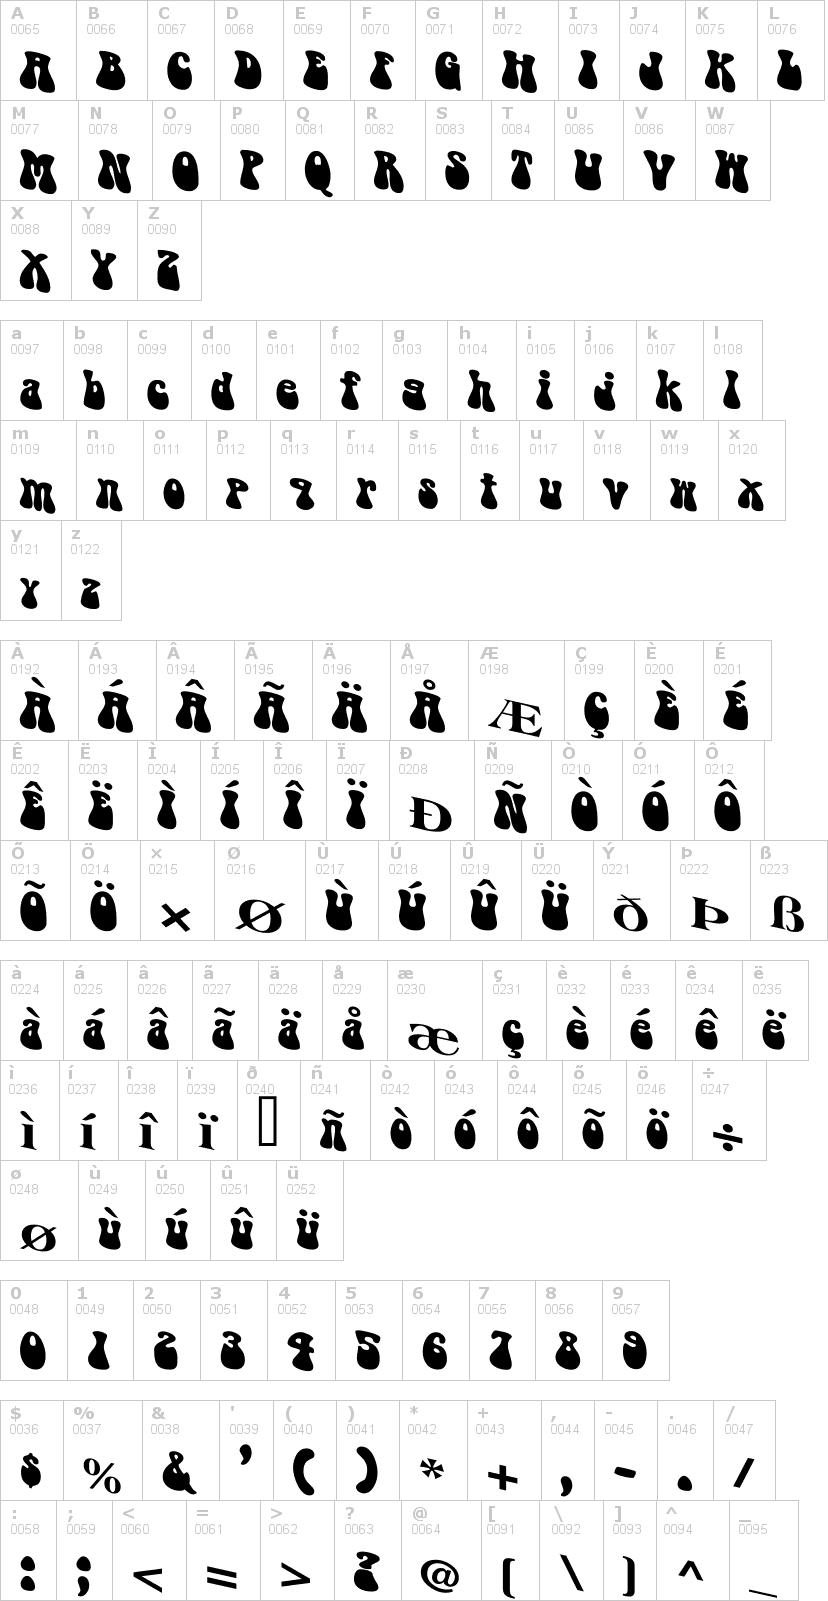 Lettere dell'alfabeto del font puppylike con le quali è possibile realizzare adesivi prespaziati